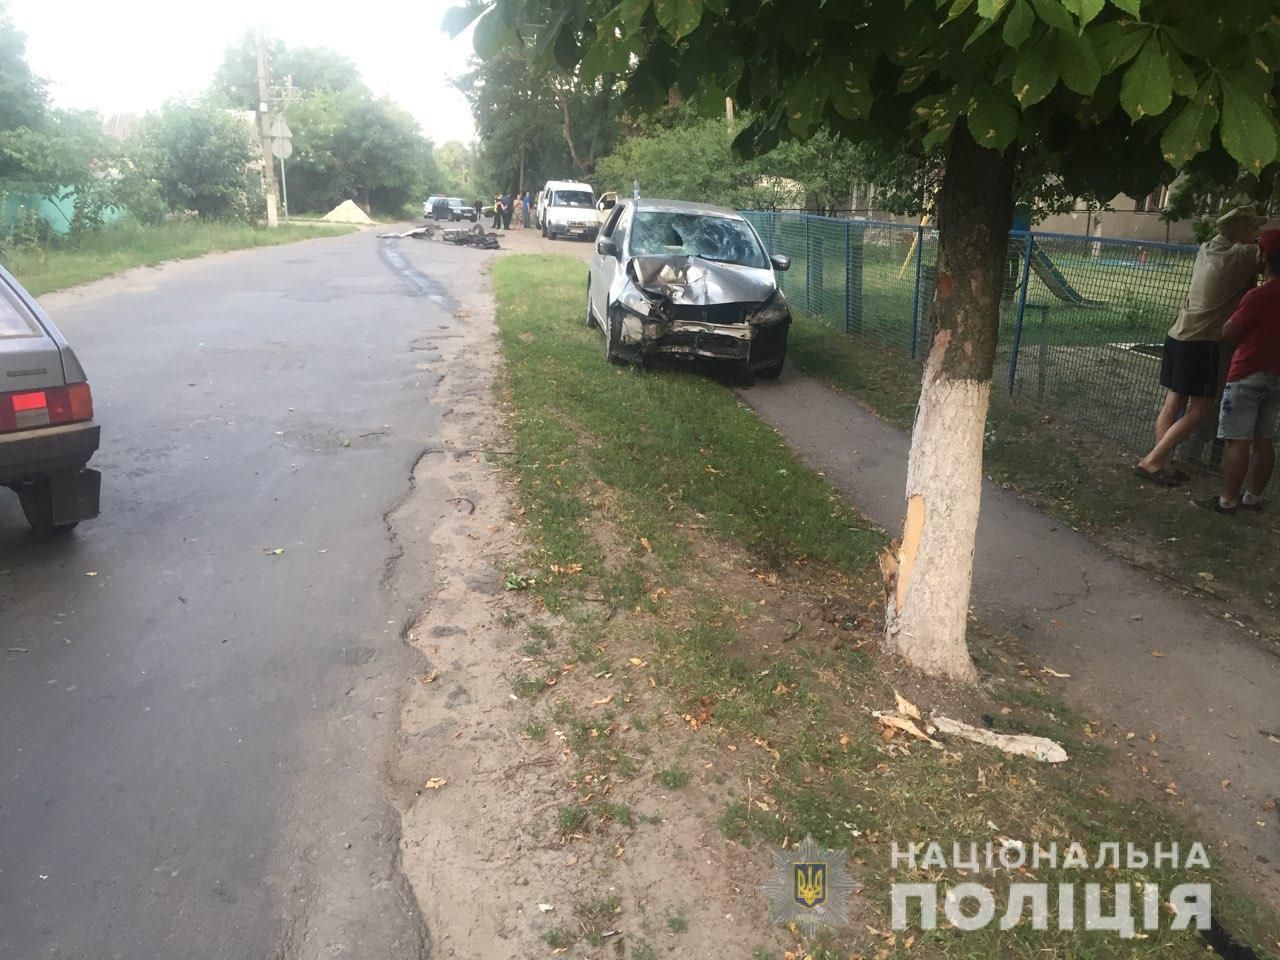 Поліцейські нарешті затримали водія, який 3 роки переховувався після смертельної ДТП - Україна новини - Харків